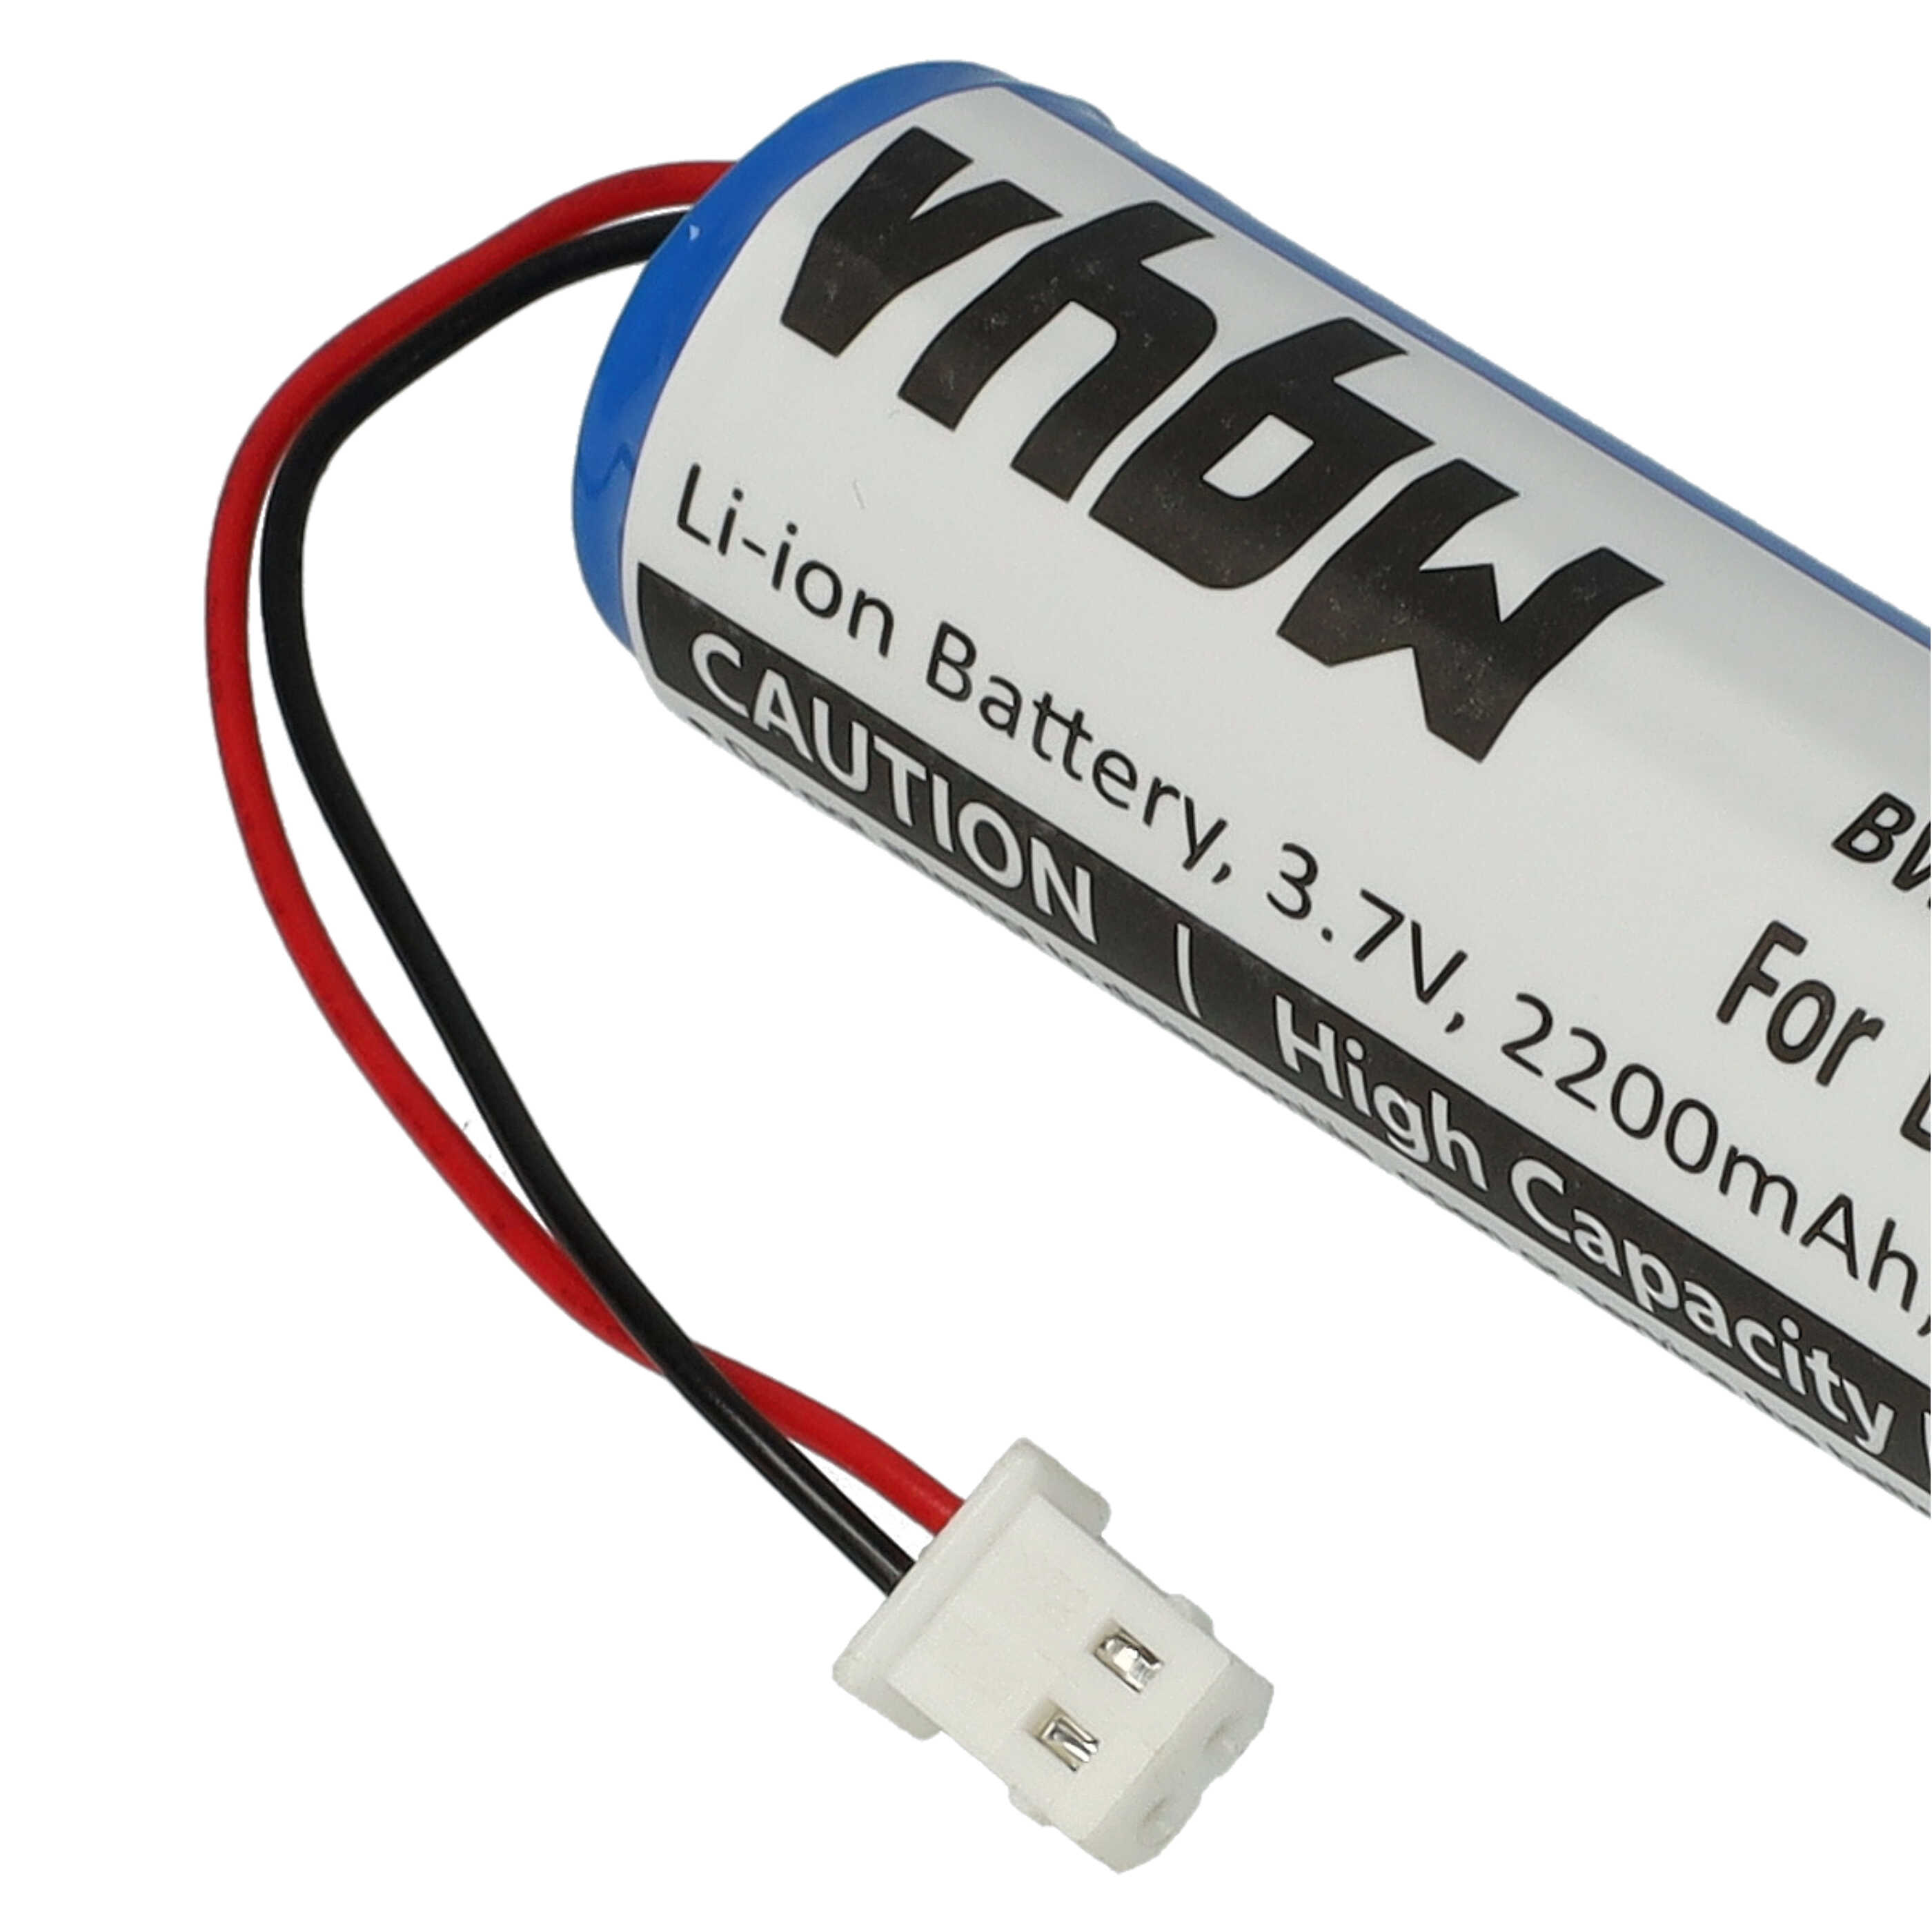 Batería reemplaza BATT20L para radio digital Midland - 2200 mAh 3,7 V Li-Ion